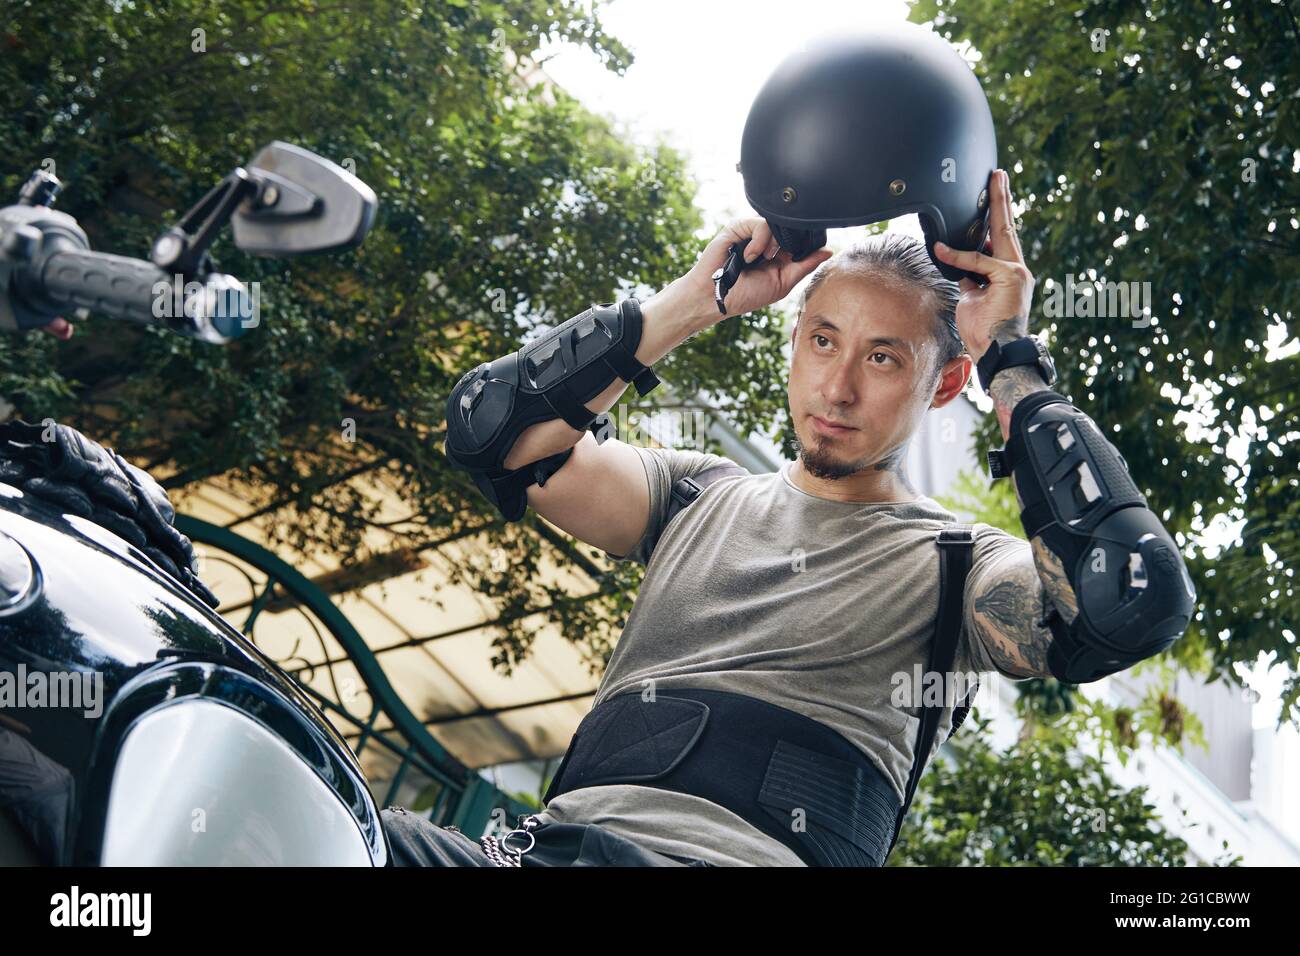 Schöner ernster Mann, der vor dem Motorradfahren Ausrüstung und Helm aufsetzt Stockfoto